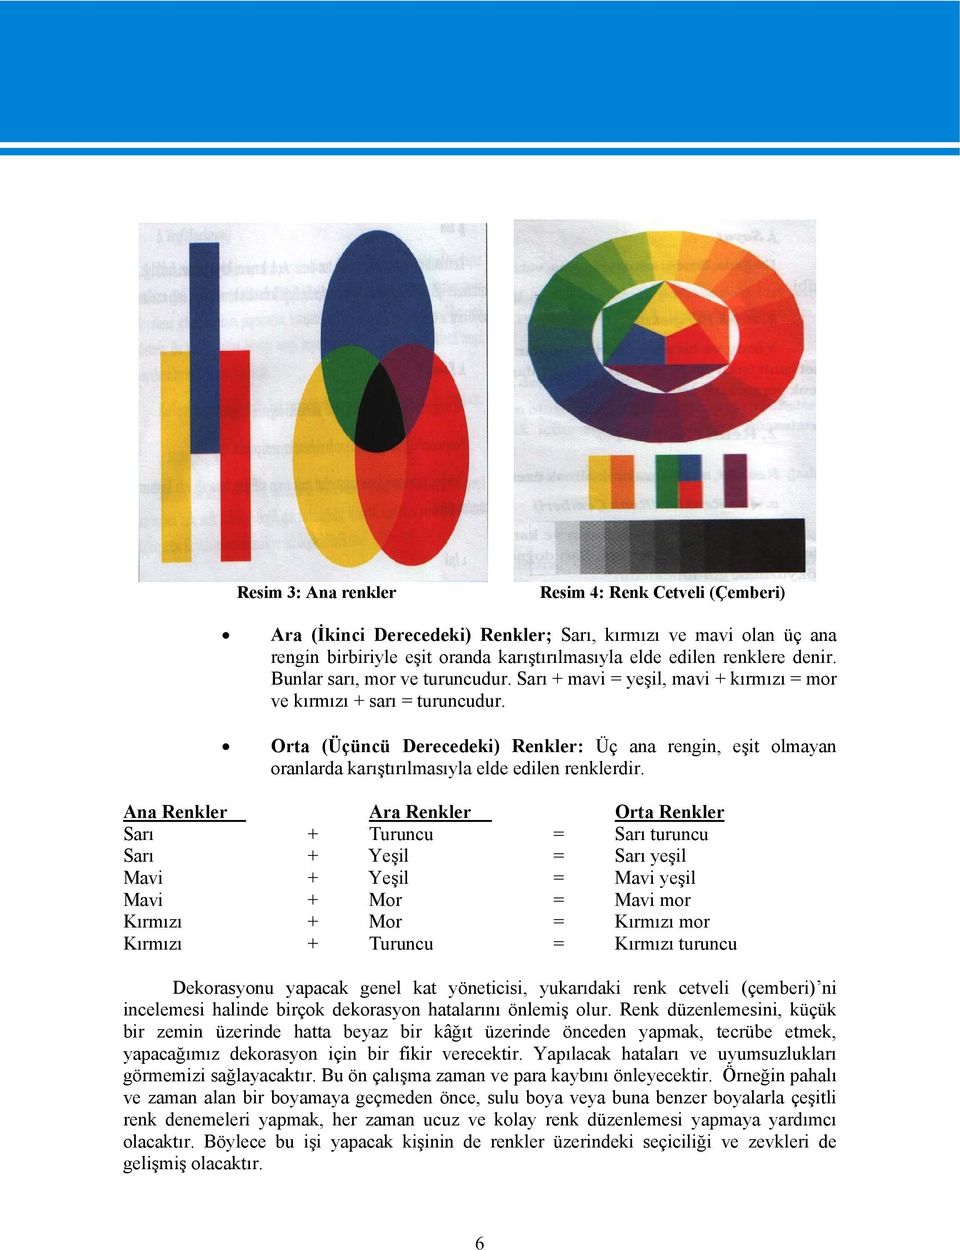 Orta (Üçüncü Derecedeki) Renkler: Üç ana rengin, eşit olmayan oranlarda karıştırılmasıyla elde edilen renklerdir.